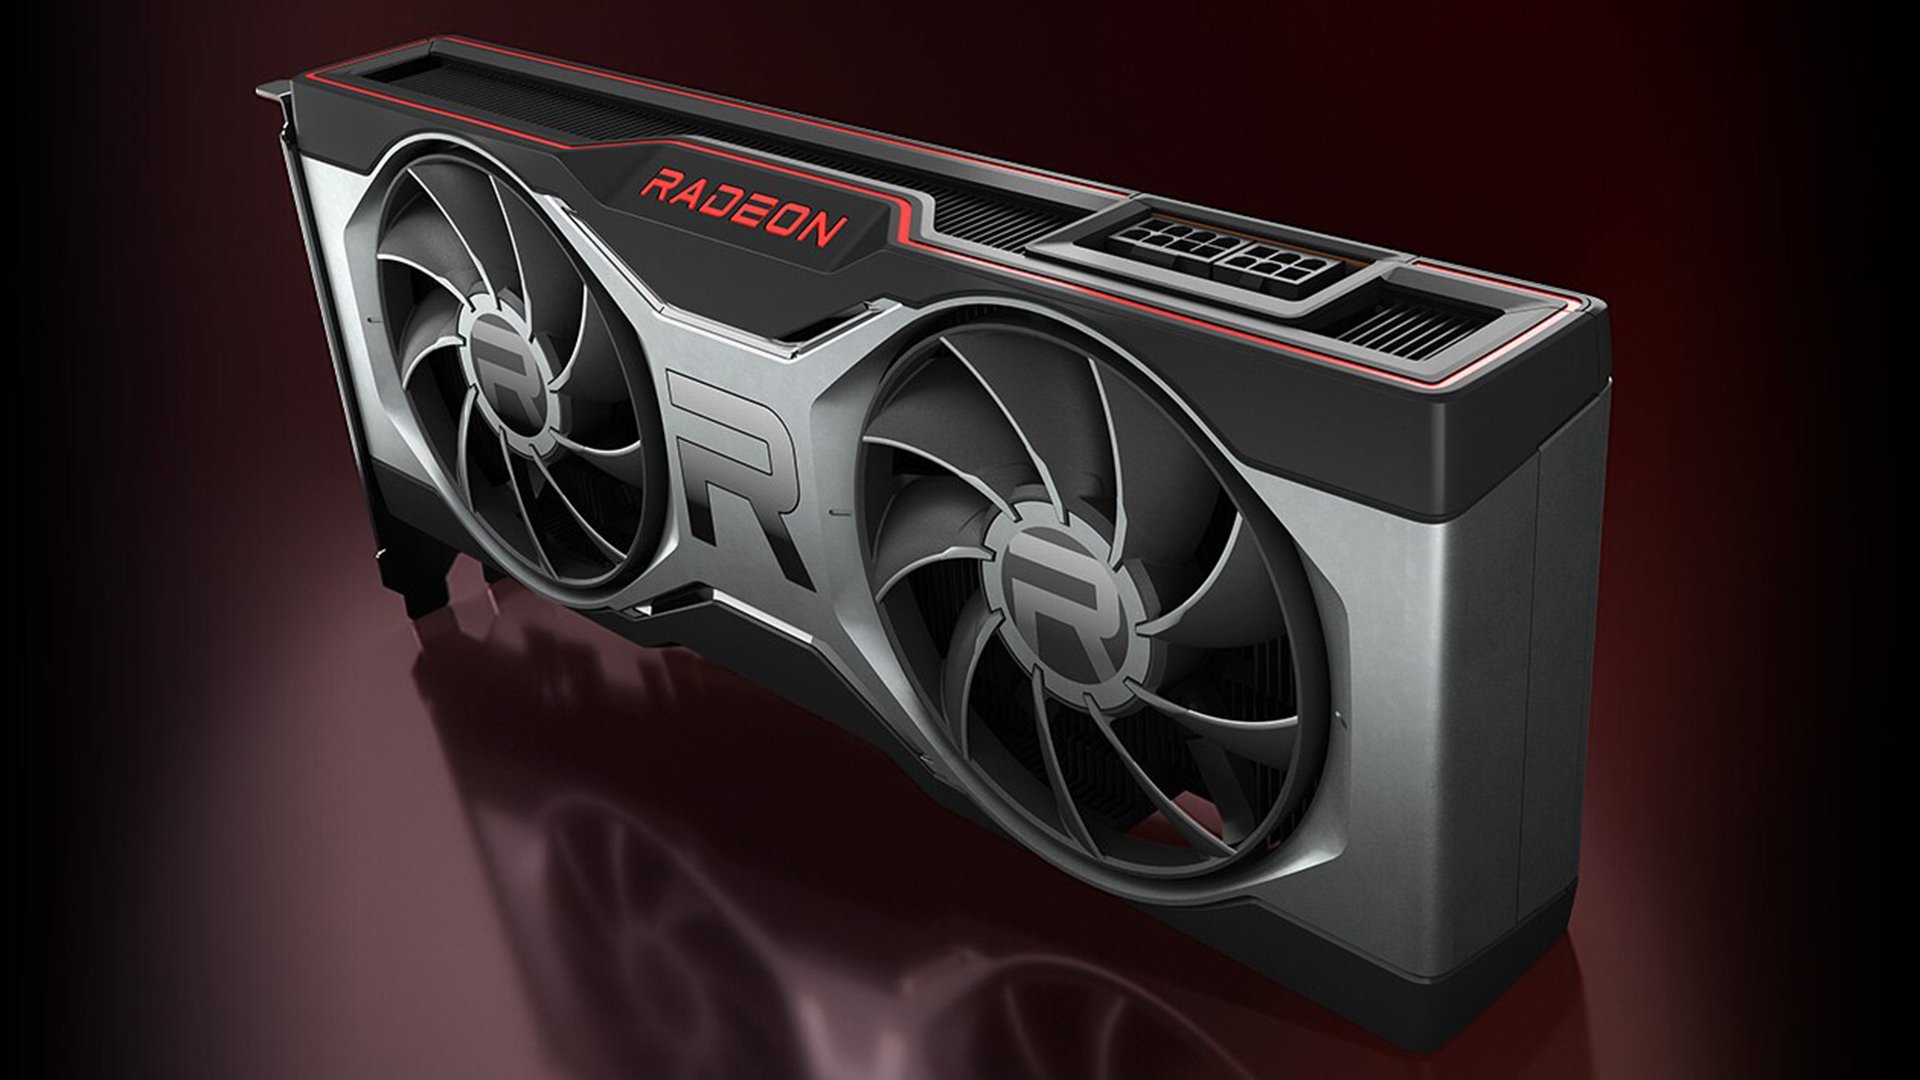 AMD Radeon RX 6700XT